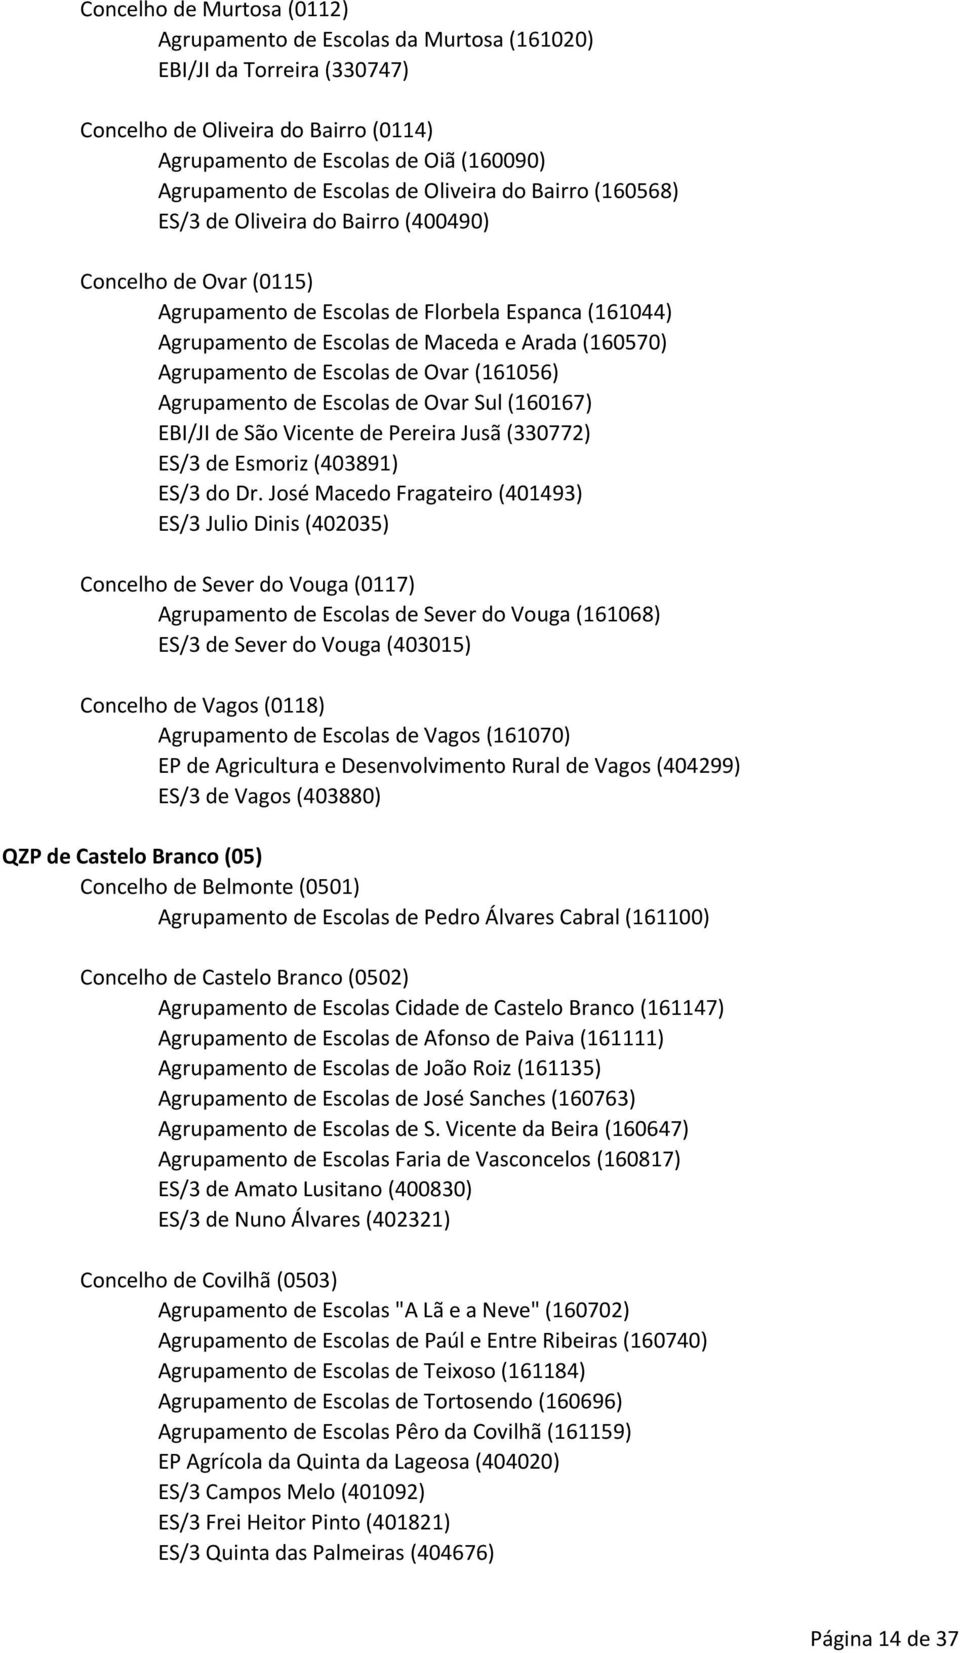 Agrupamento de Escolas de Ovar (161056) Agrupamento de Escolas de Ovar Sul (160167) EBI/JI de São Vicente de Pereira Jusã (330772) ES/3 de Esmoriz (403891) ES/3 do Dr.